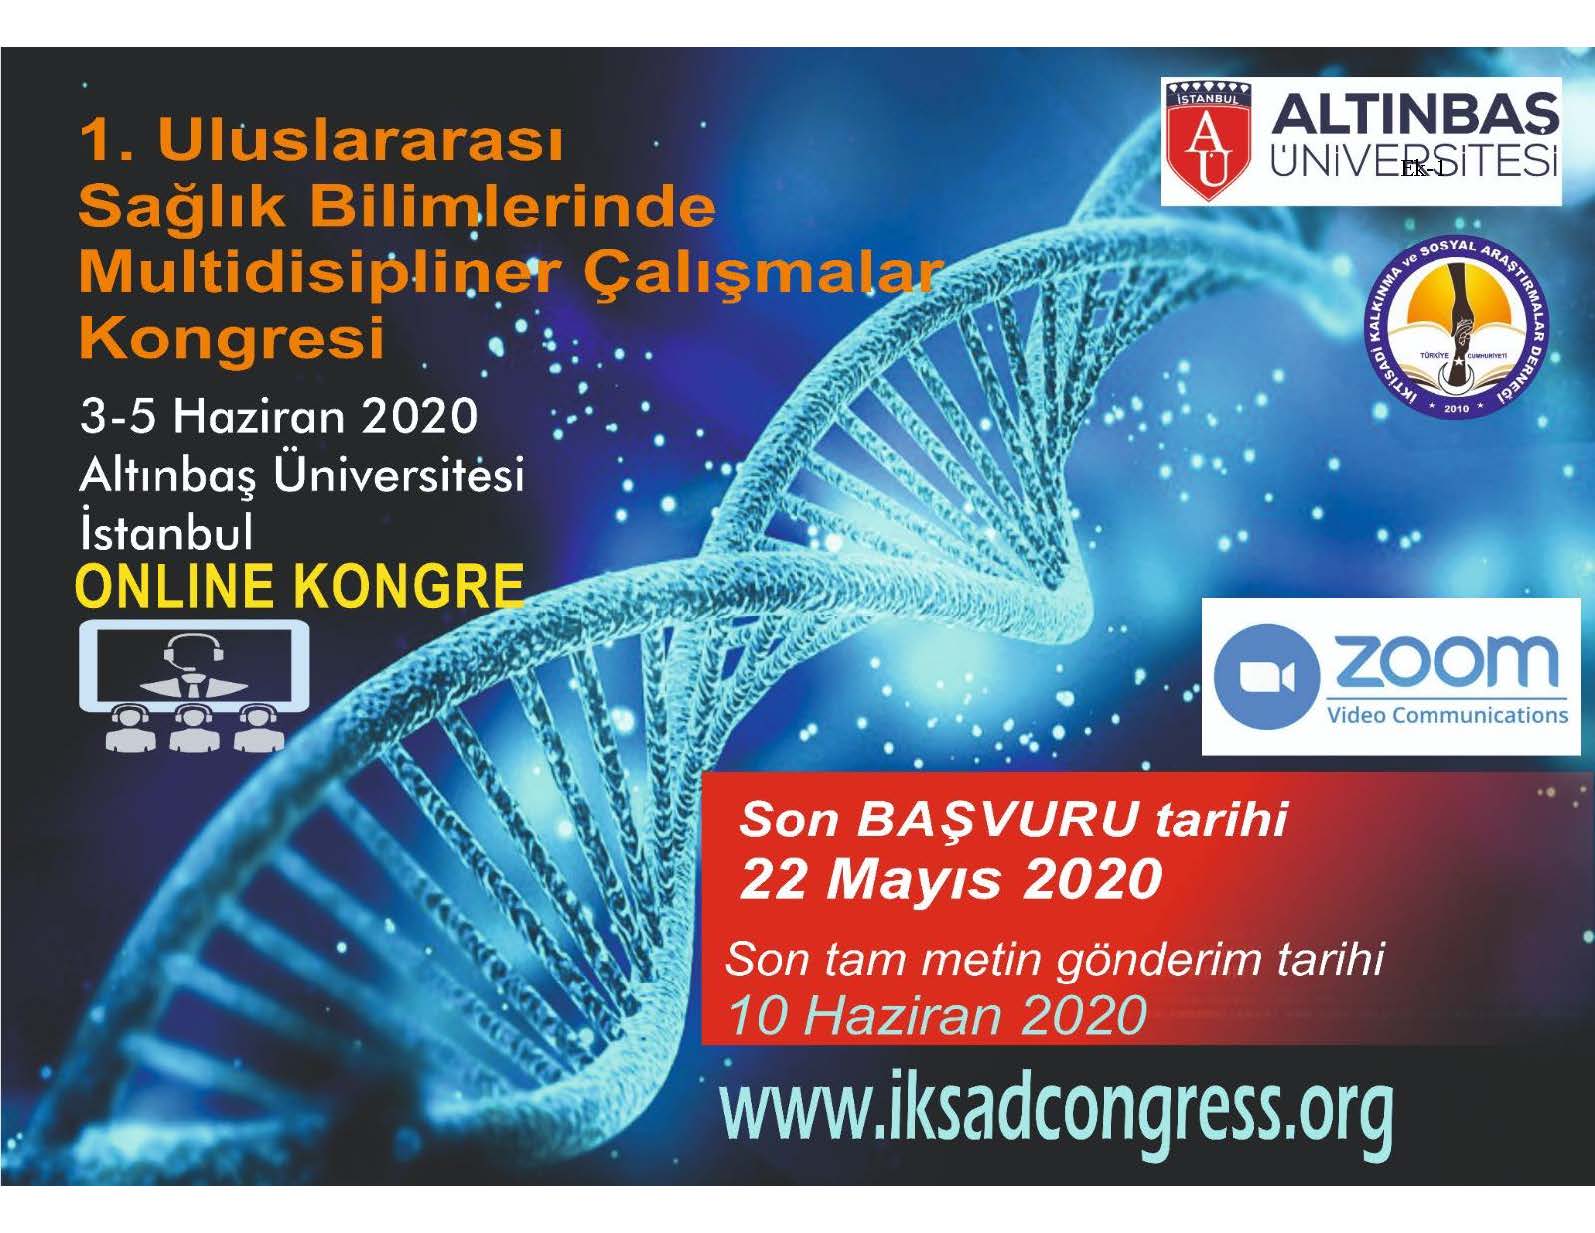 "1. Uluslararası Sağlık Bilimlerinde Multidispliner Çalışmalar Kongresi"